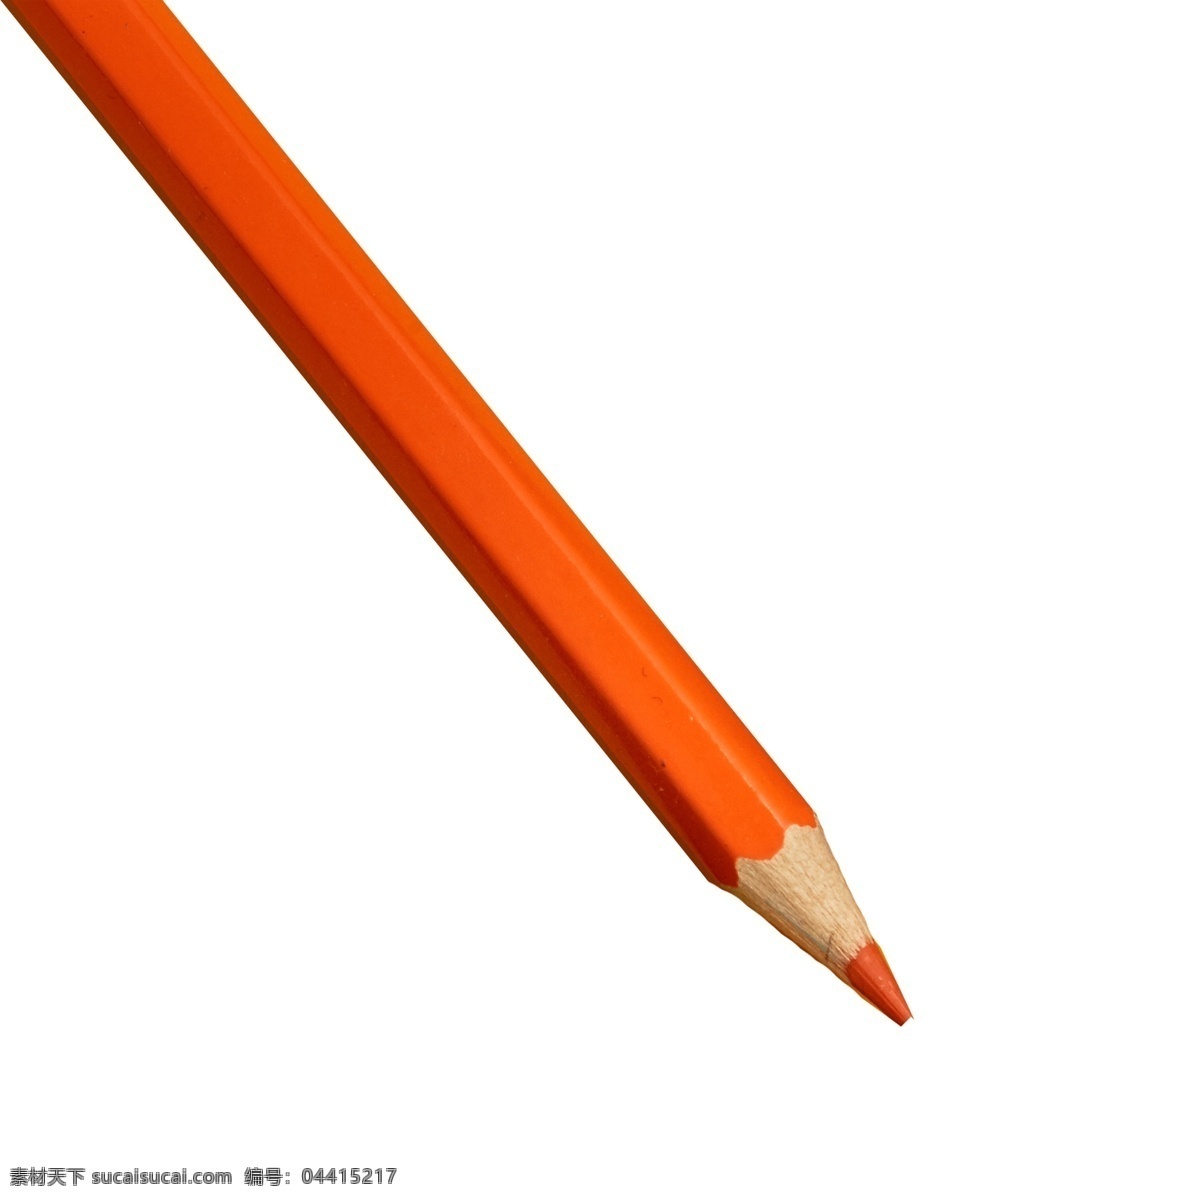 彩色画笔 铅笔 水彩笔 画笔 实物 实物免扣 实物下载